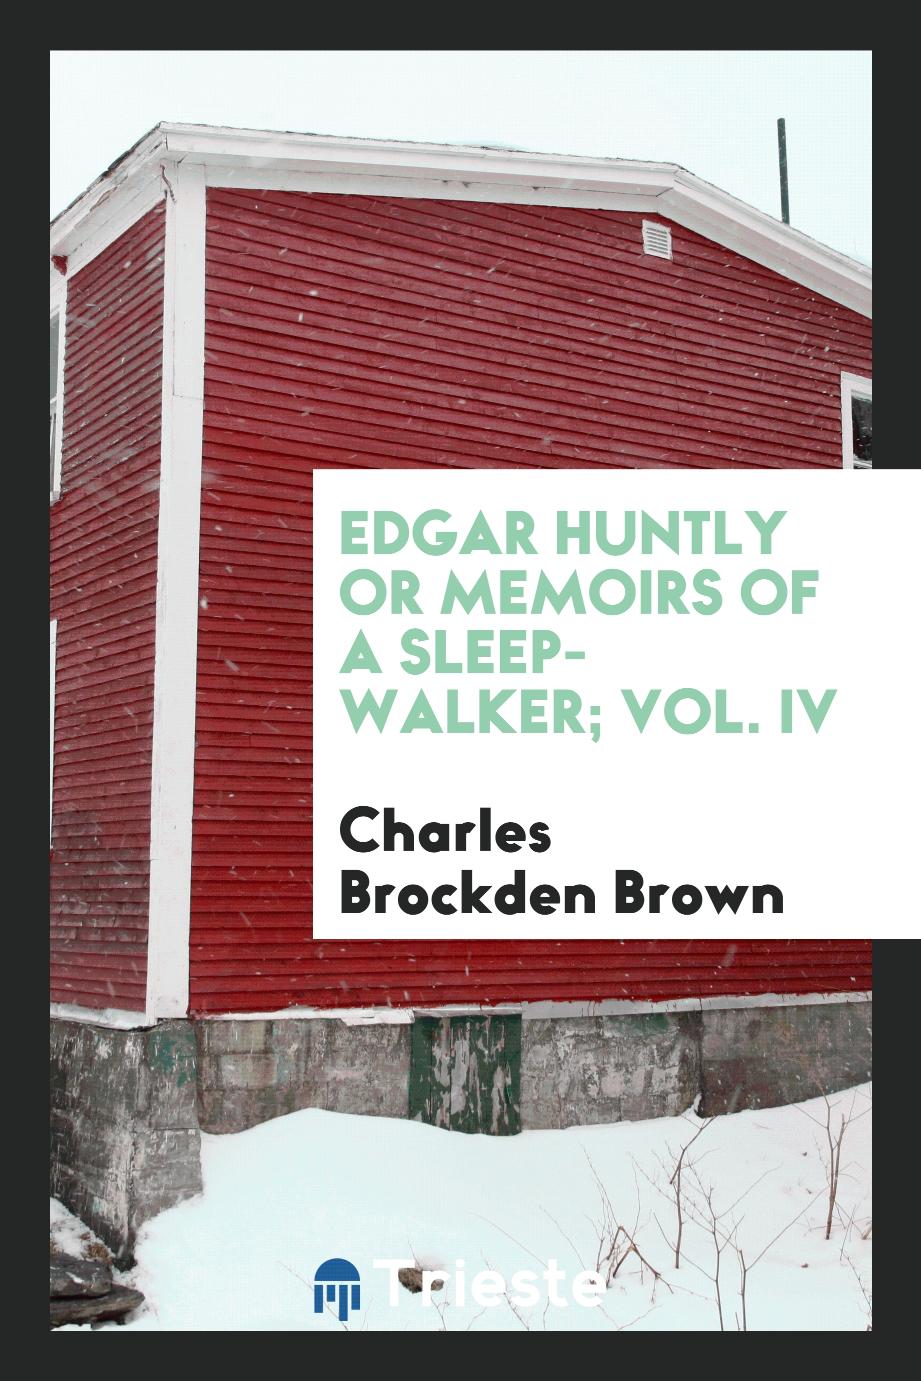 Edgar Huntly or memoirs of a sleep-walker; Vol. IV